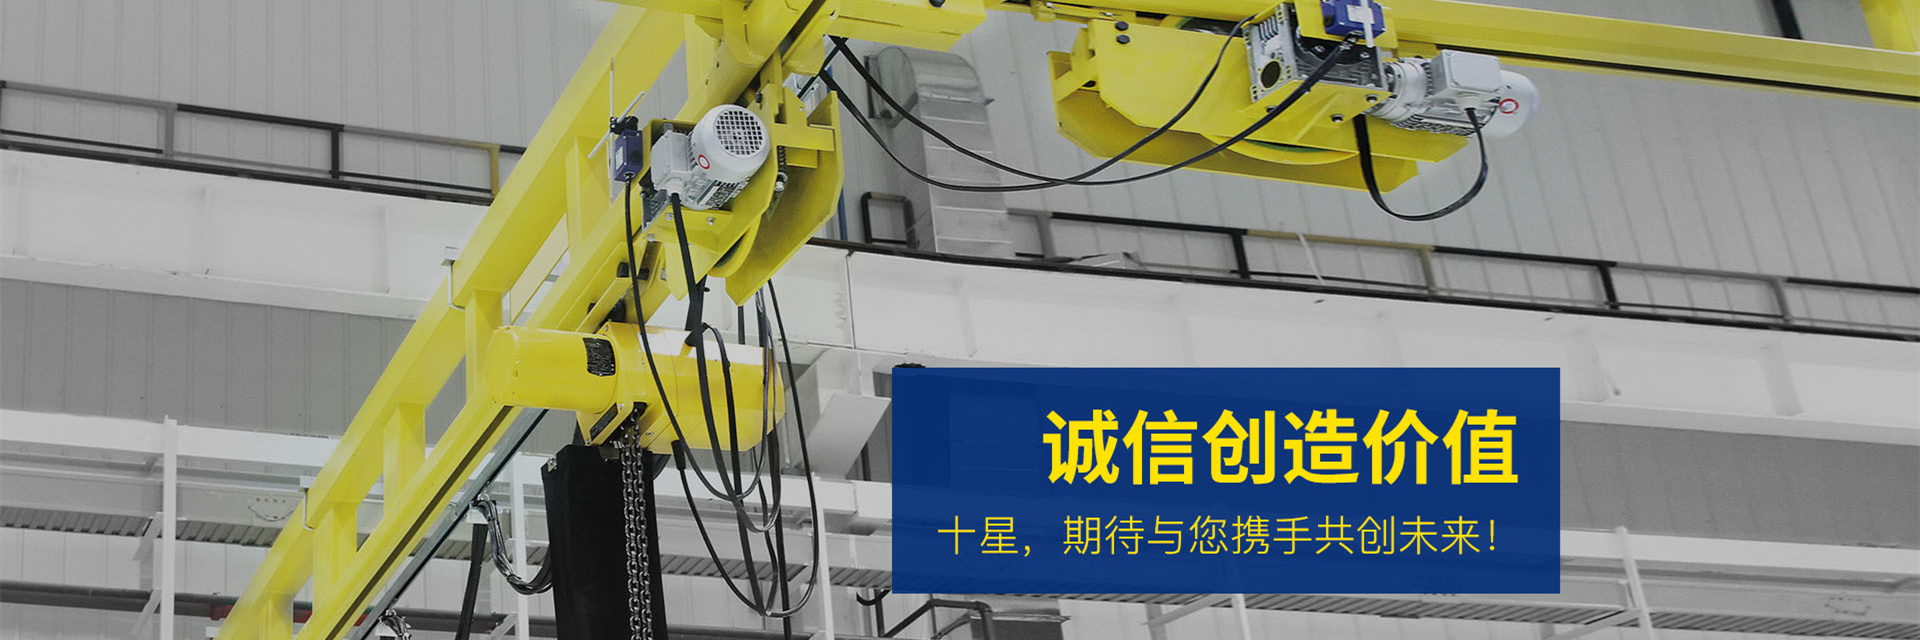 青岛机械设备行业网站建设